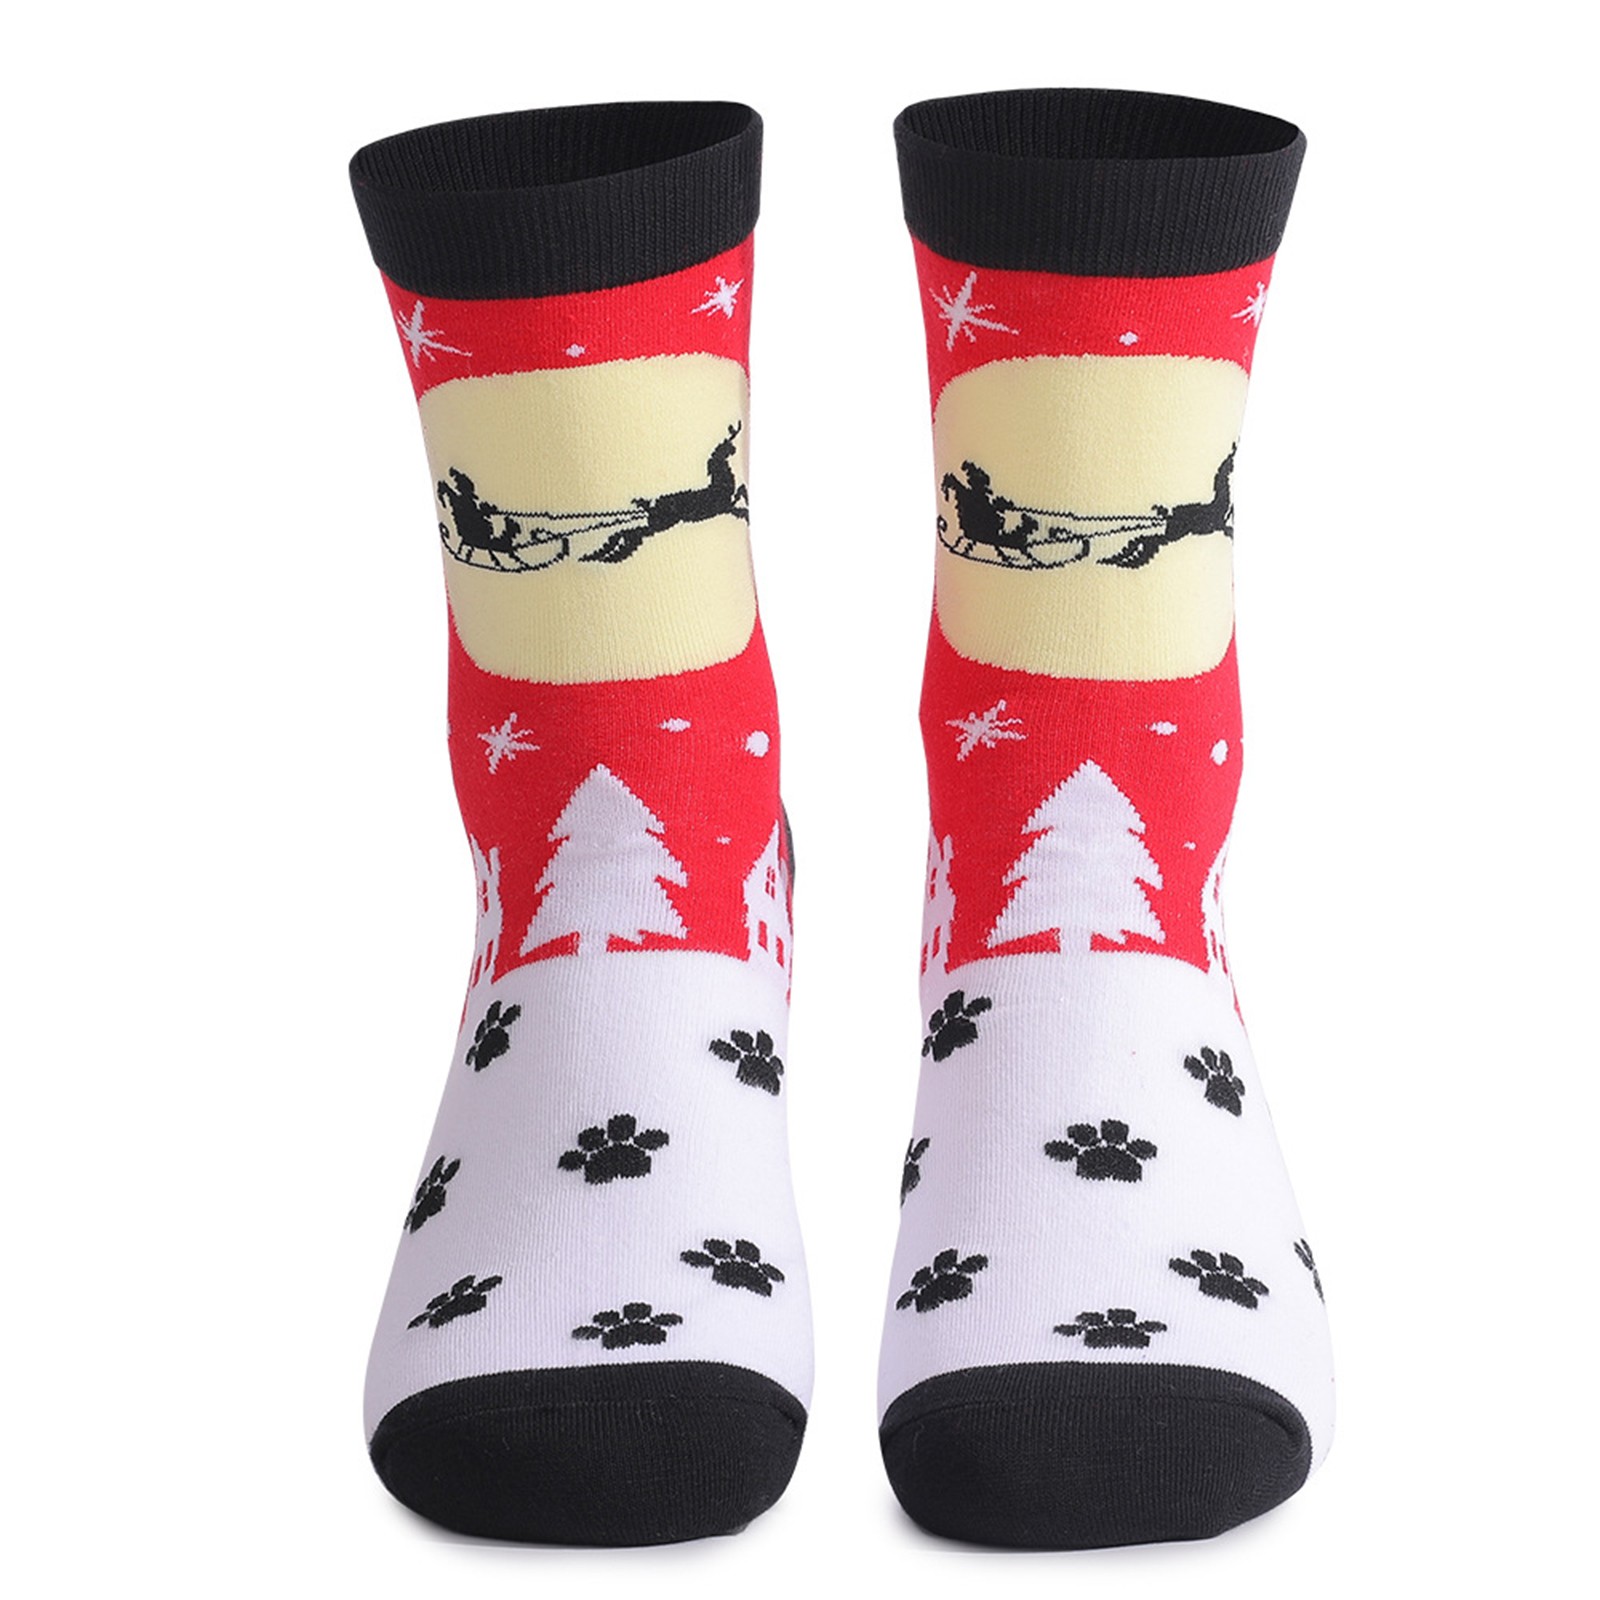 Ogiraw Socks Warm Socks for Women Men's and Women's Christmas Printed ...